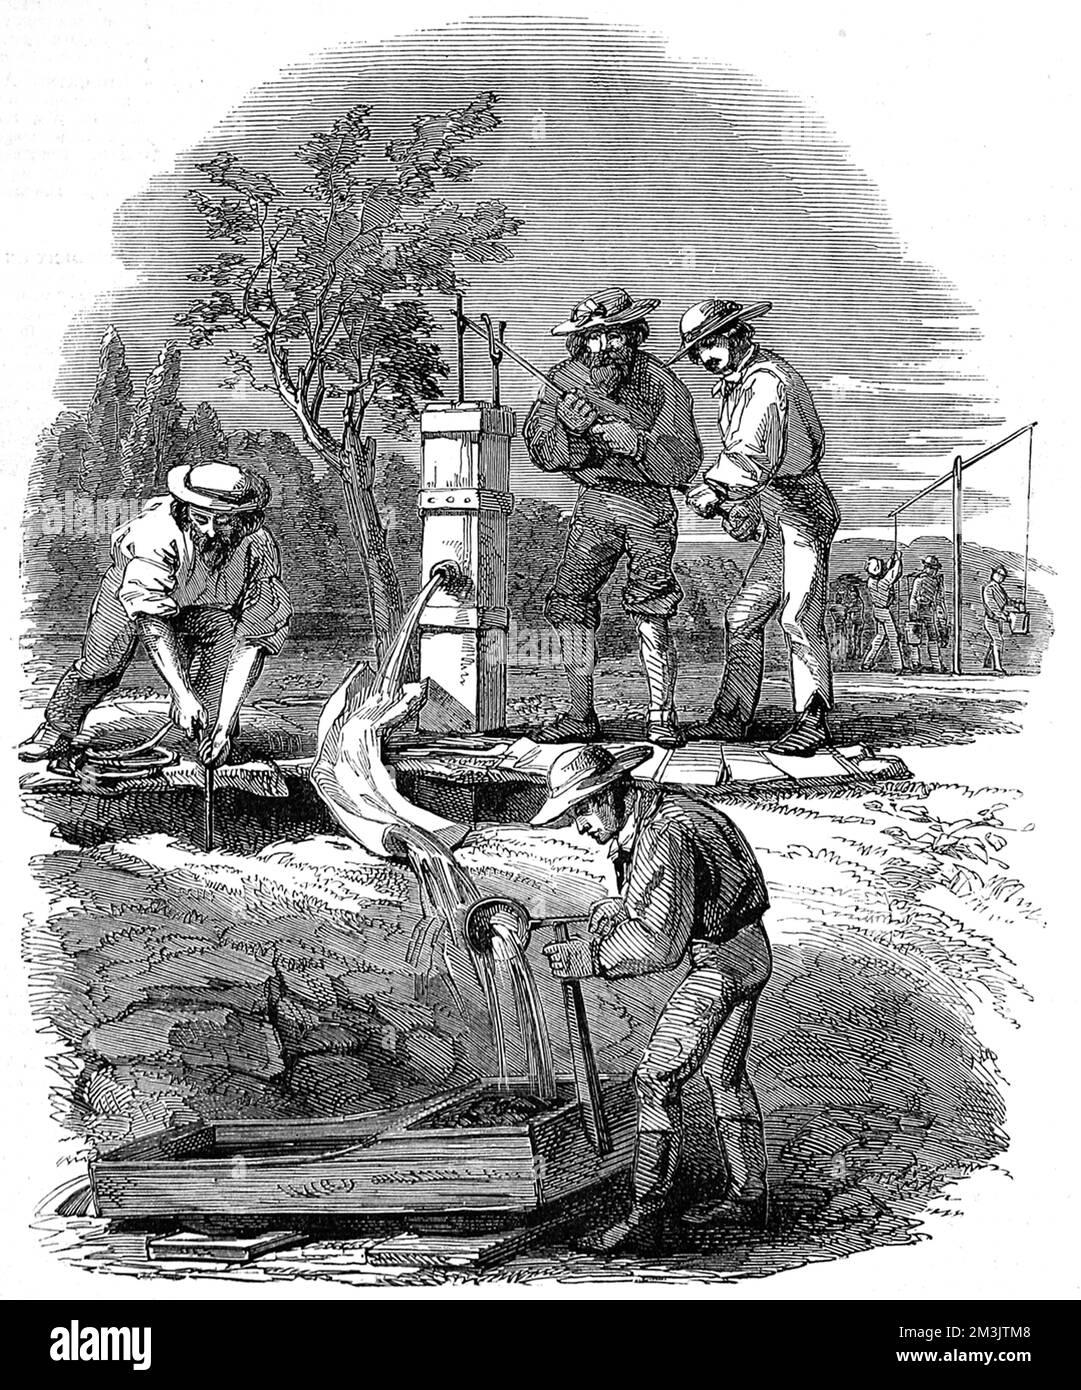 Das Flussbett, das auf dem Turon Fluss gesiebt ist, eine Skizze von den Turon Goldfeldern, New South Wales. Die Pumpe wird 12 Meter von der Oberfläche des Flusses abgesenkt und Wasser wird verwendet, um die Erde in der Wiege zu waschen. Dies ist ein arbeitsplatzsparendes Gerät, das es den Baggern ermöglicht, große Mengen an Gold zu gewinnen Datum: 21.. August 1852 Stockfoto